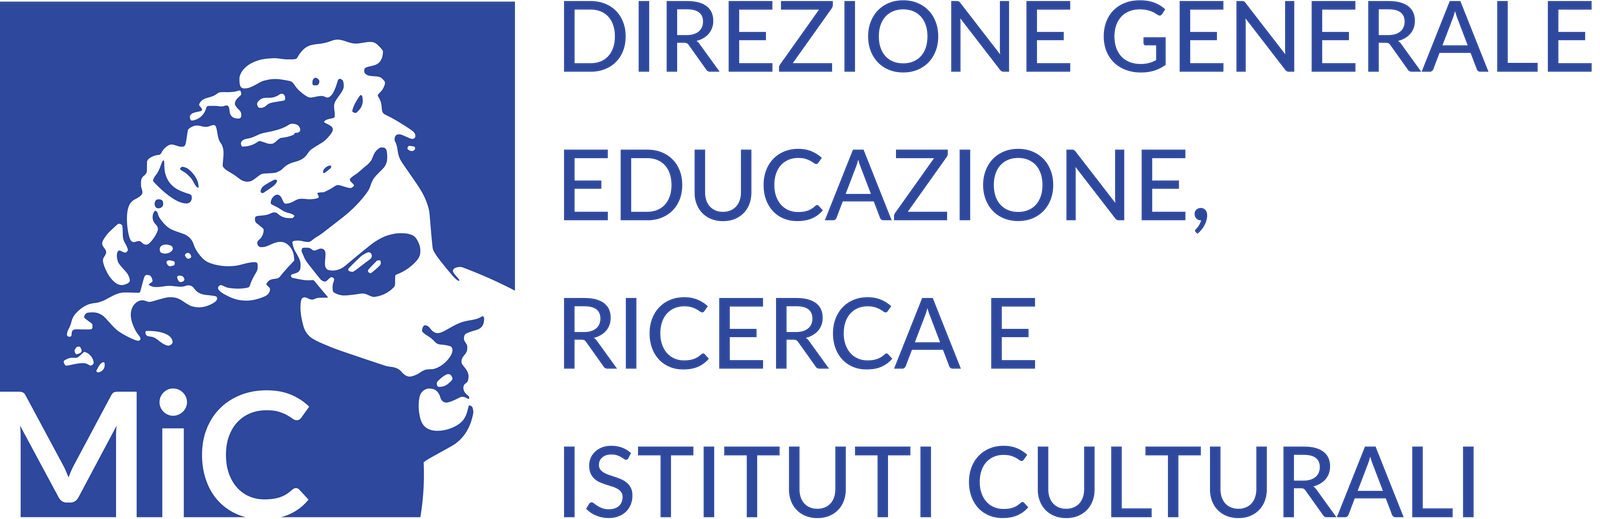 Direzione Generale Educazione, Ricerca e Istituti Culturali. Ministero della Cultura